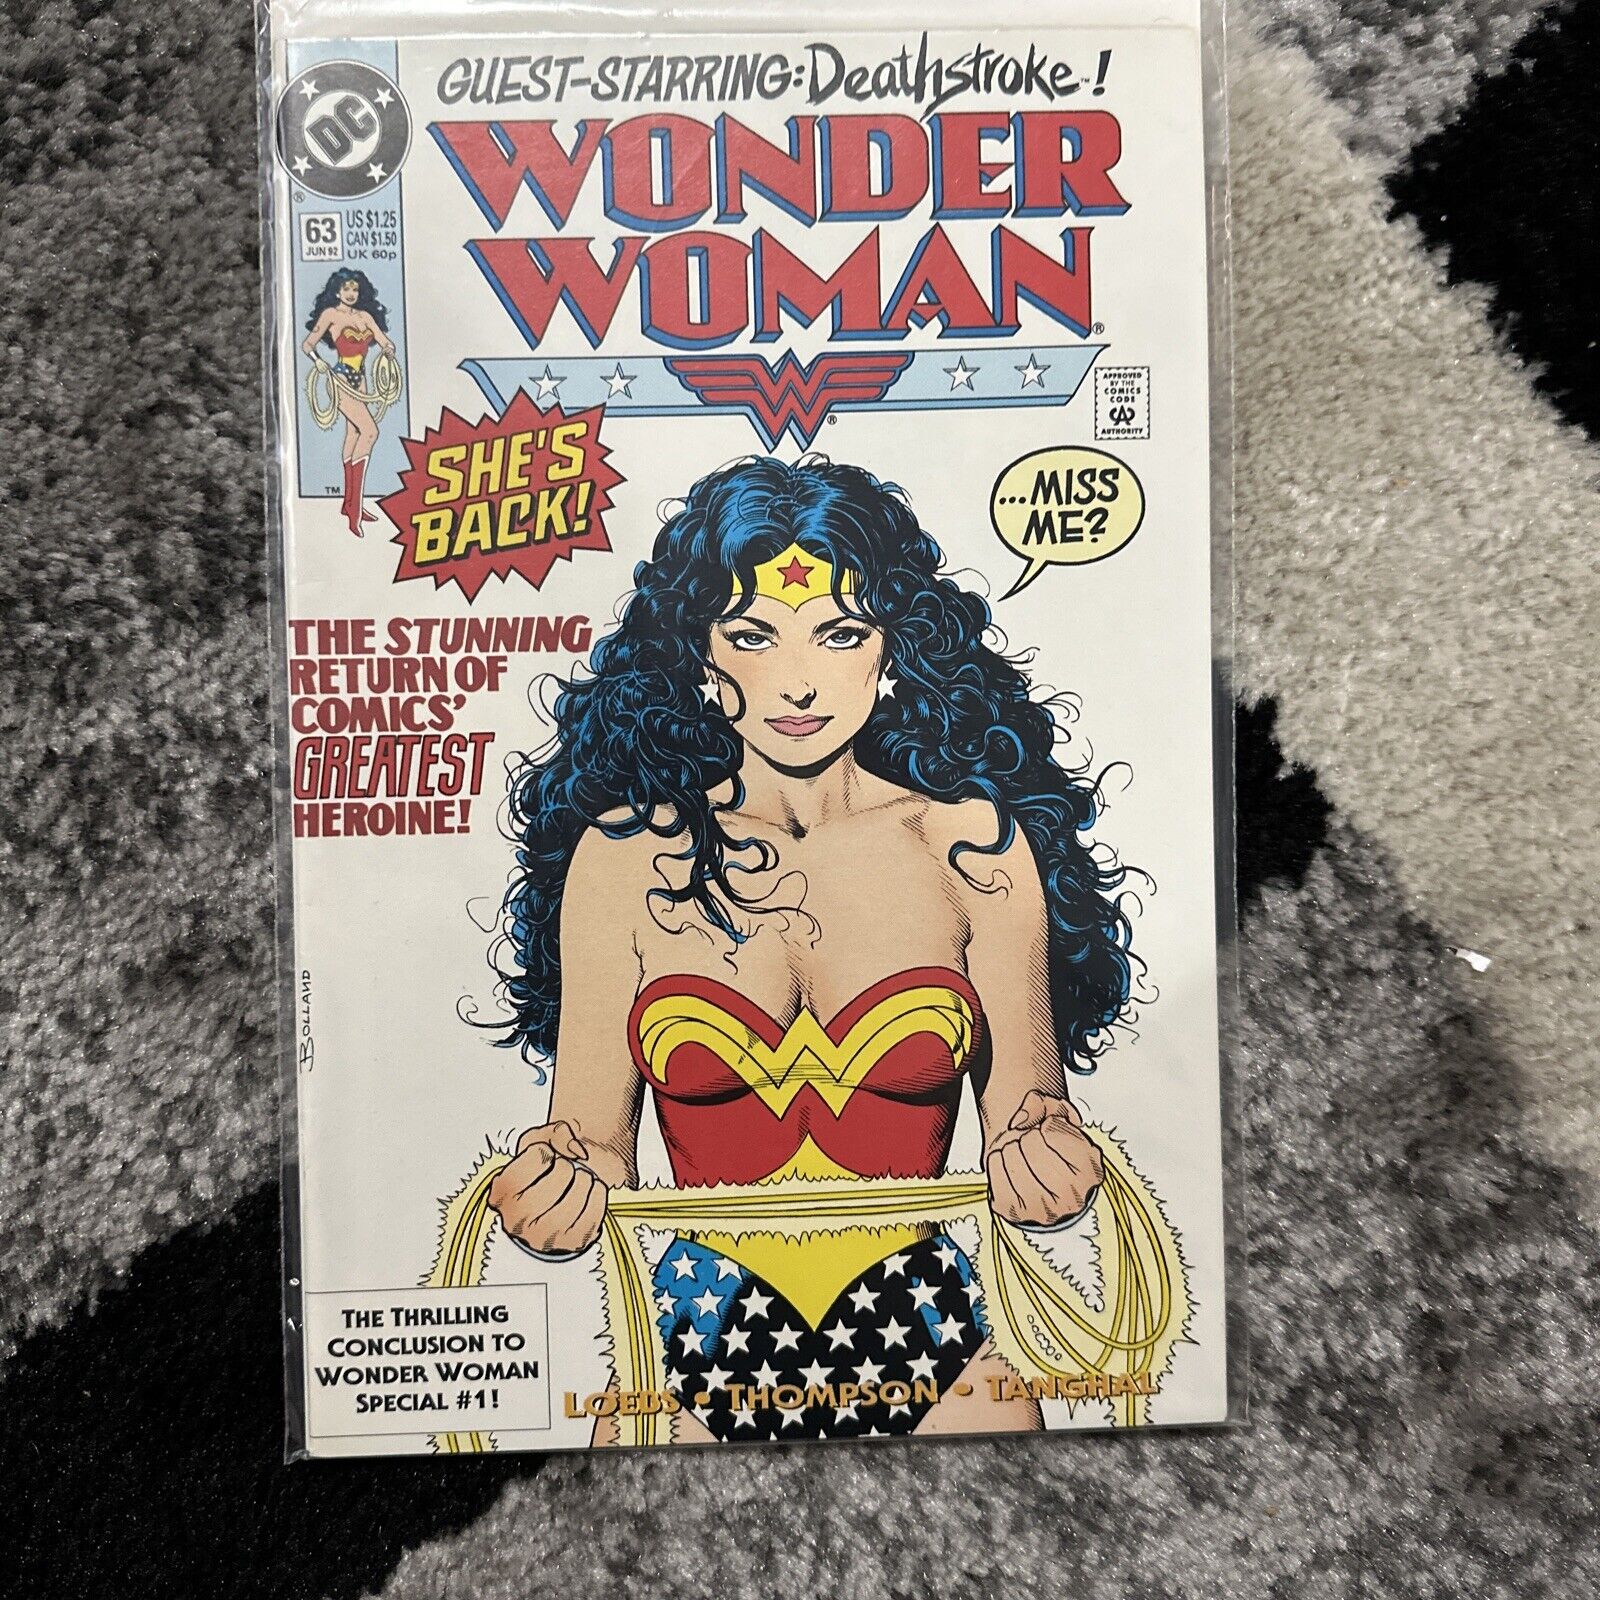 Wonder Woman #63 Guest Starring Deatg Stroke